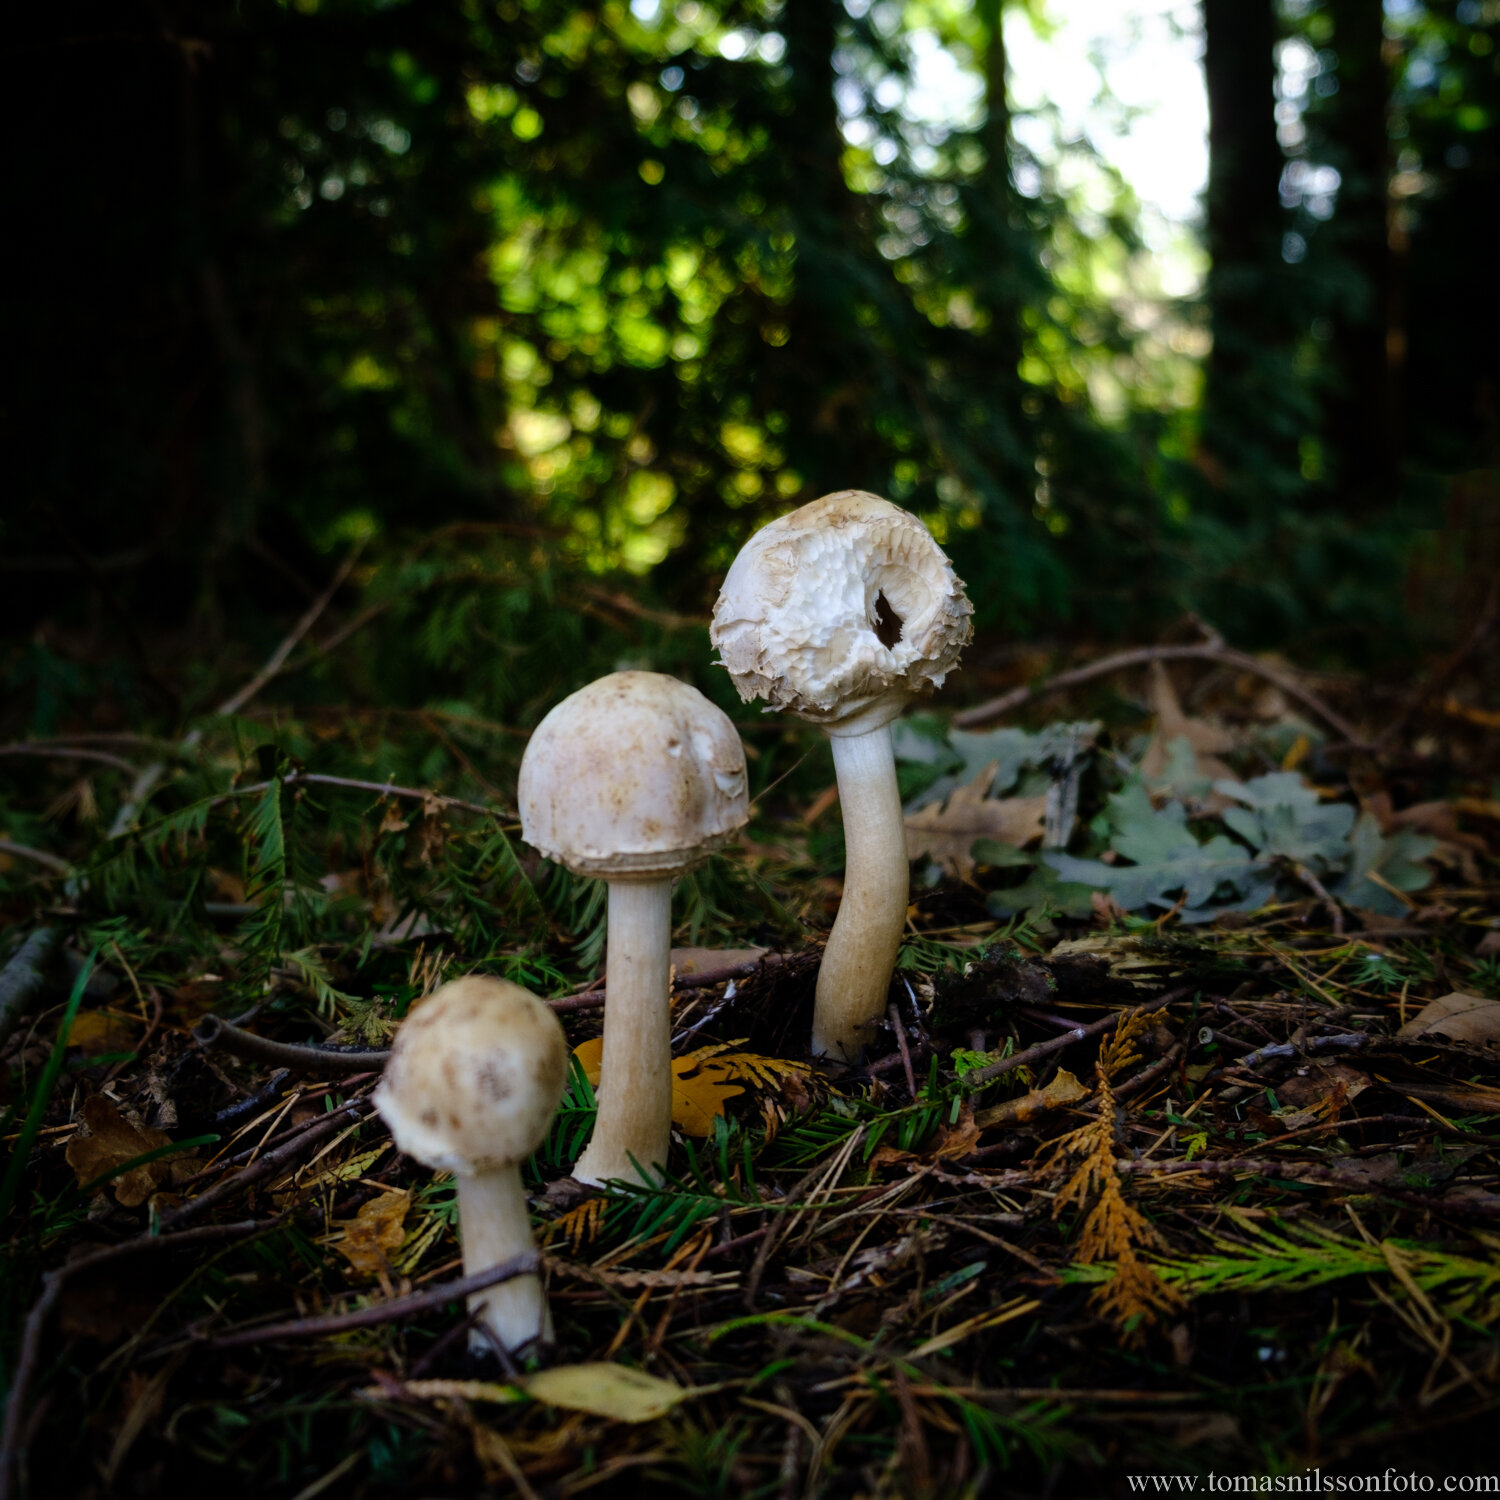 Day 282 - October 9: Mushroom Season